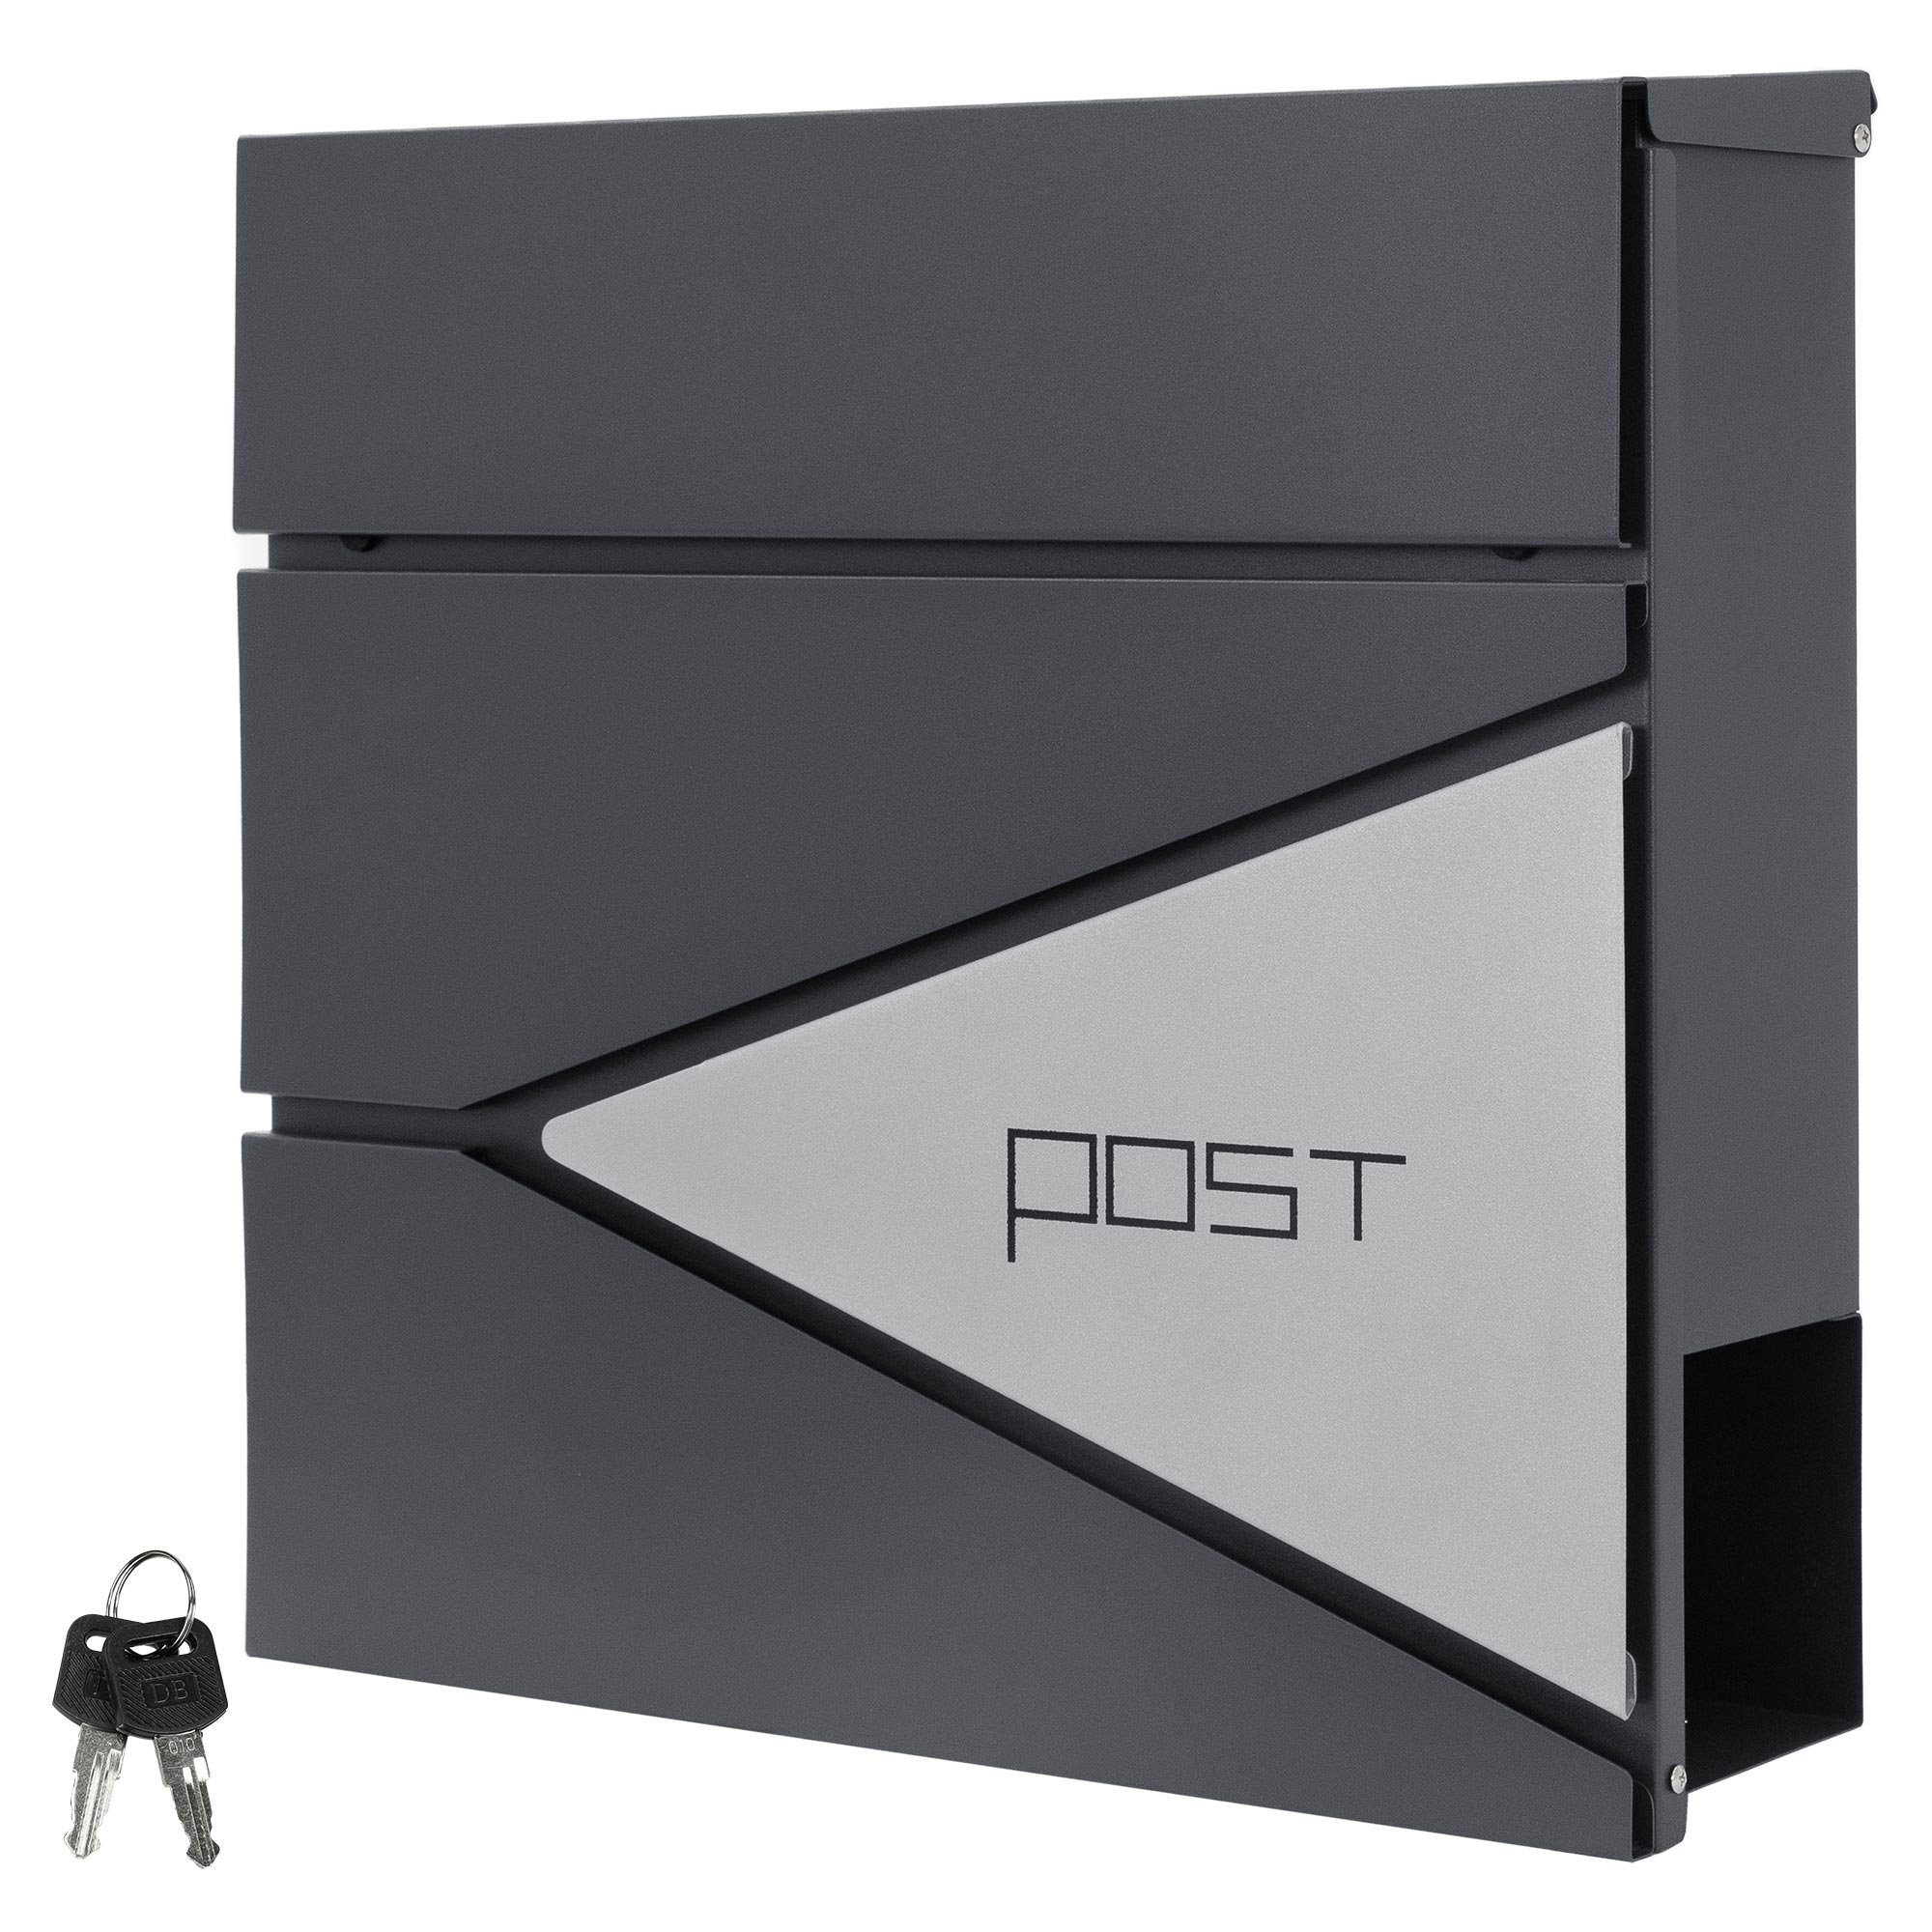 ML-DESIGN Briefkasten Postkasten mit Zeitungsfach Designwandbriefkasten Mailbox, Anthrazit/Silber Edelstahl pulverbeschichtet 37x37cm Wandmontage